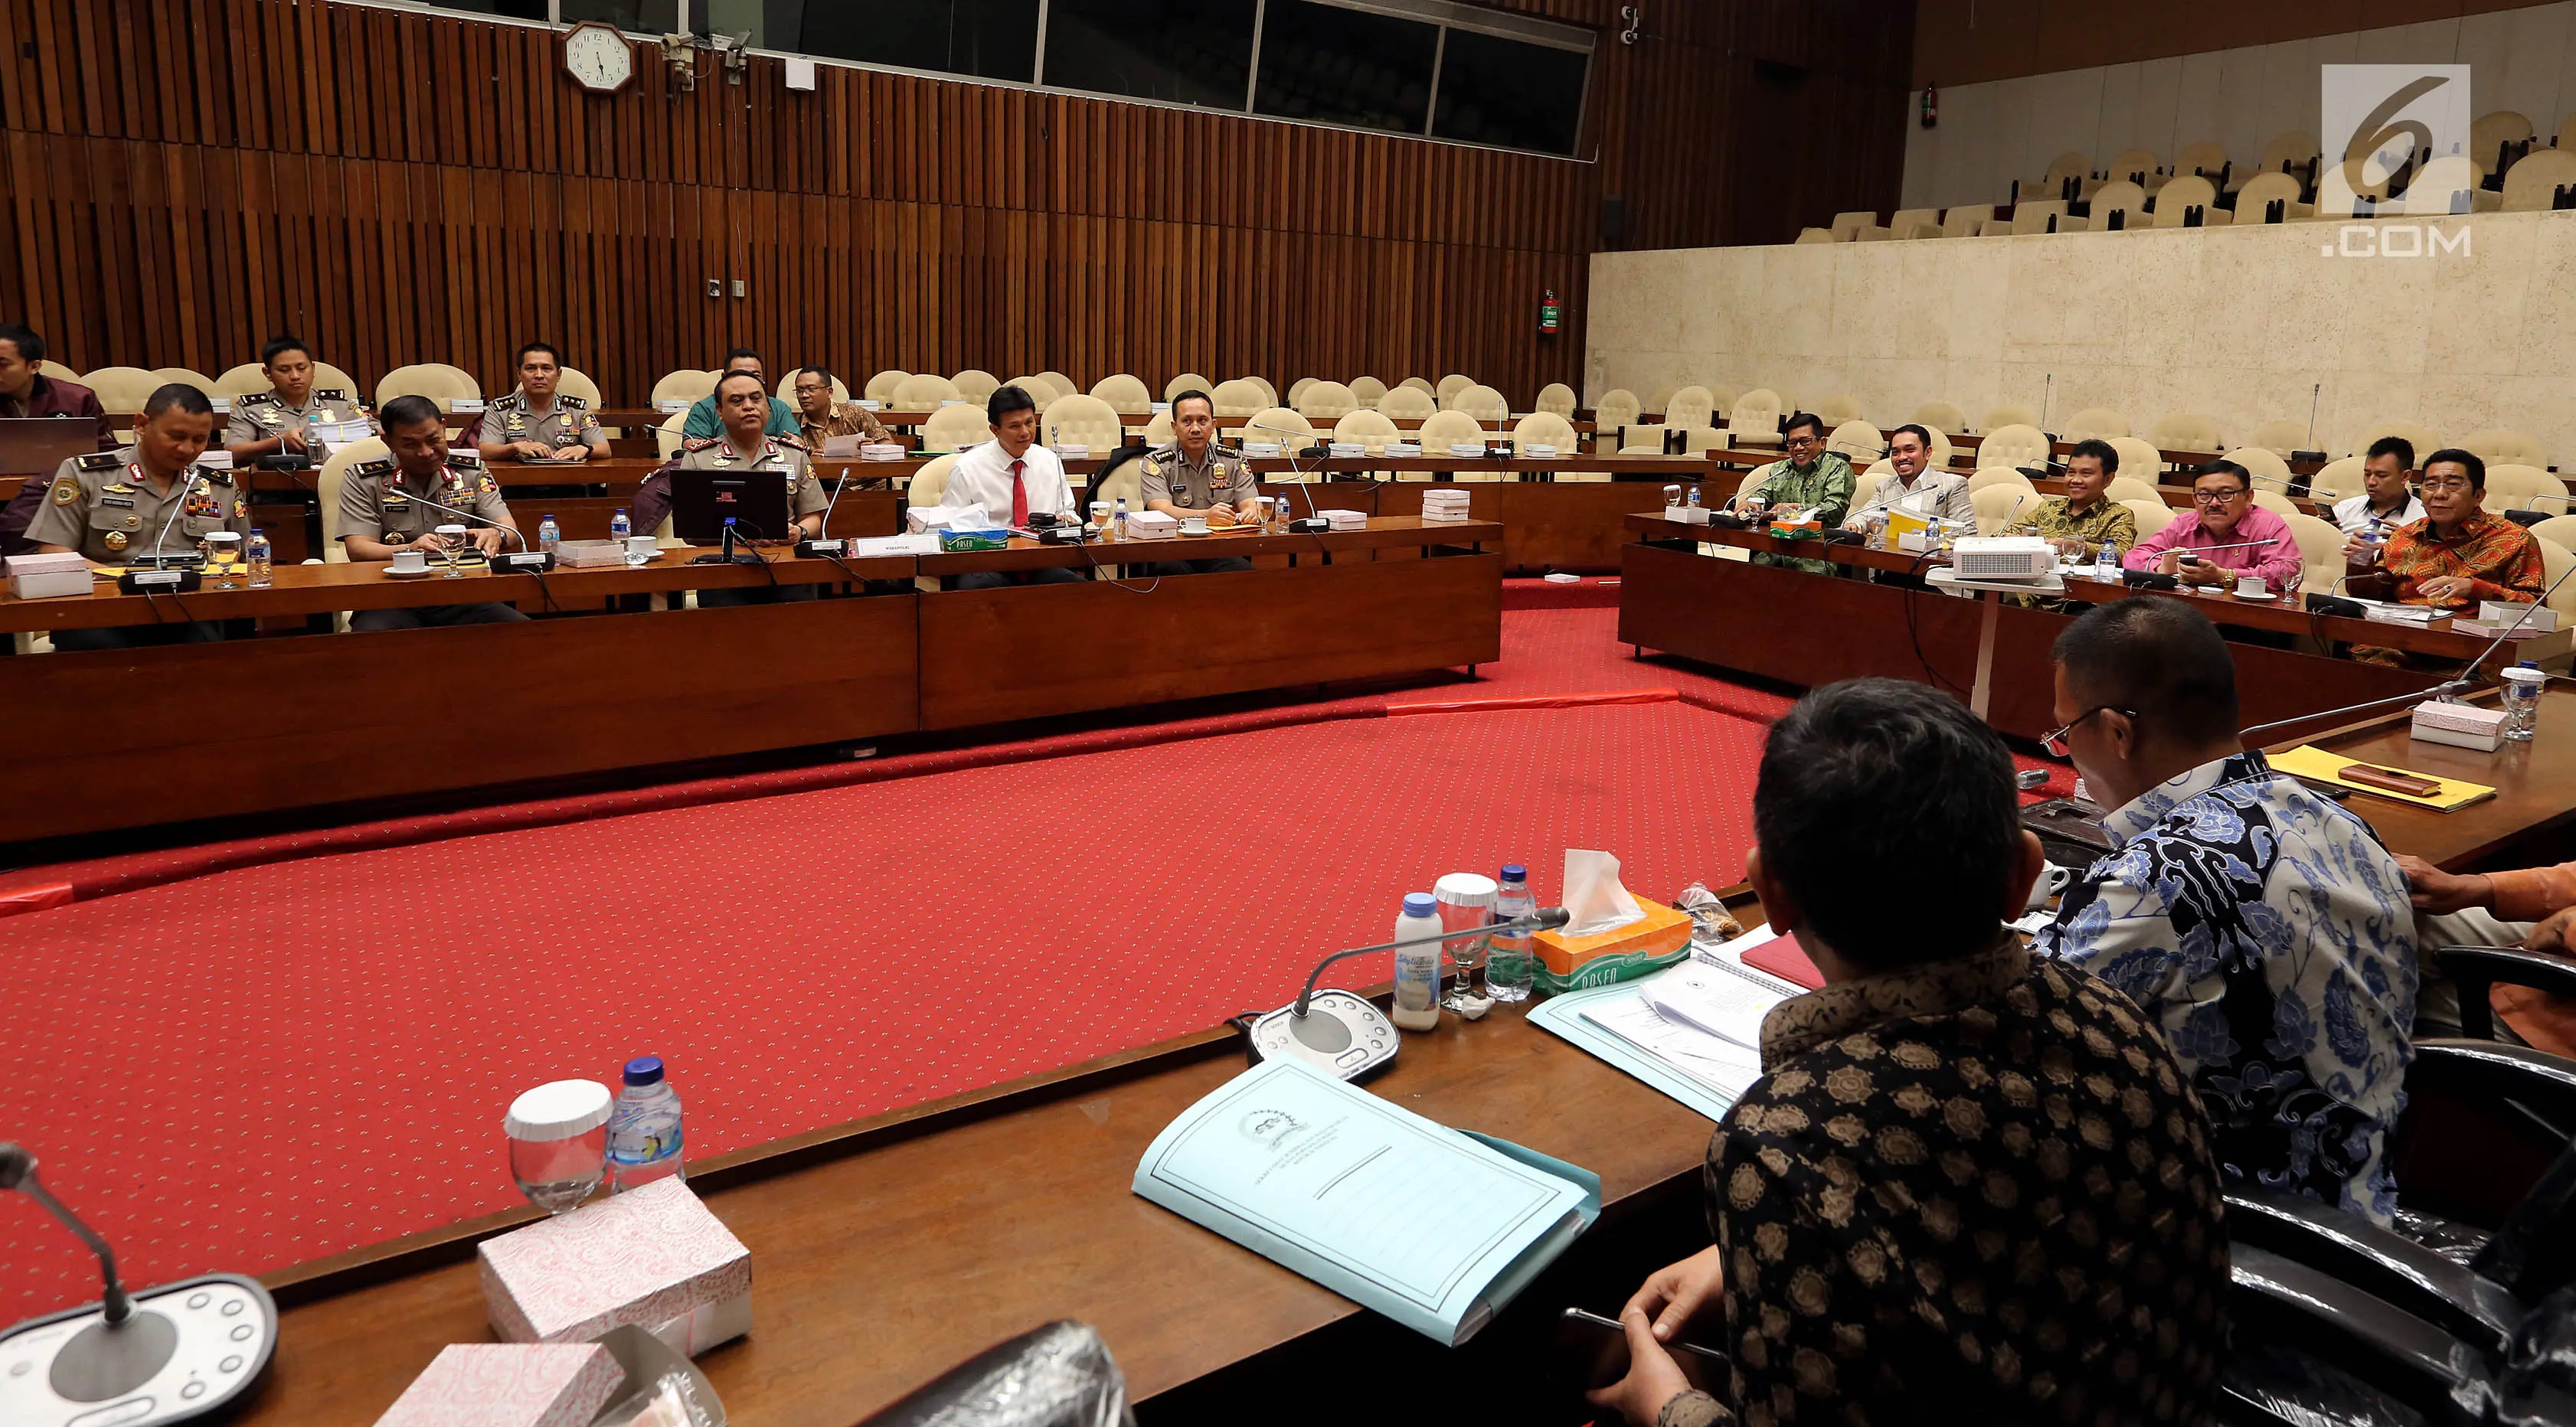 Suasana Rapat Dengar Pendapat di Komplek Parlemen, Senayan, Jakarta, Rabu (19/7). Rapat tertutup itu membahas salah satunya  hasil audit BPK terkait temuan sejumlah ketidakpatuhan terhadap peraturan dan penyimpangan sistem. (Liputan6.com/Johan Tallo)